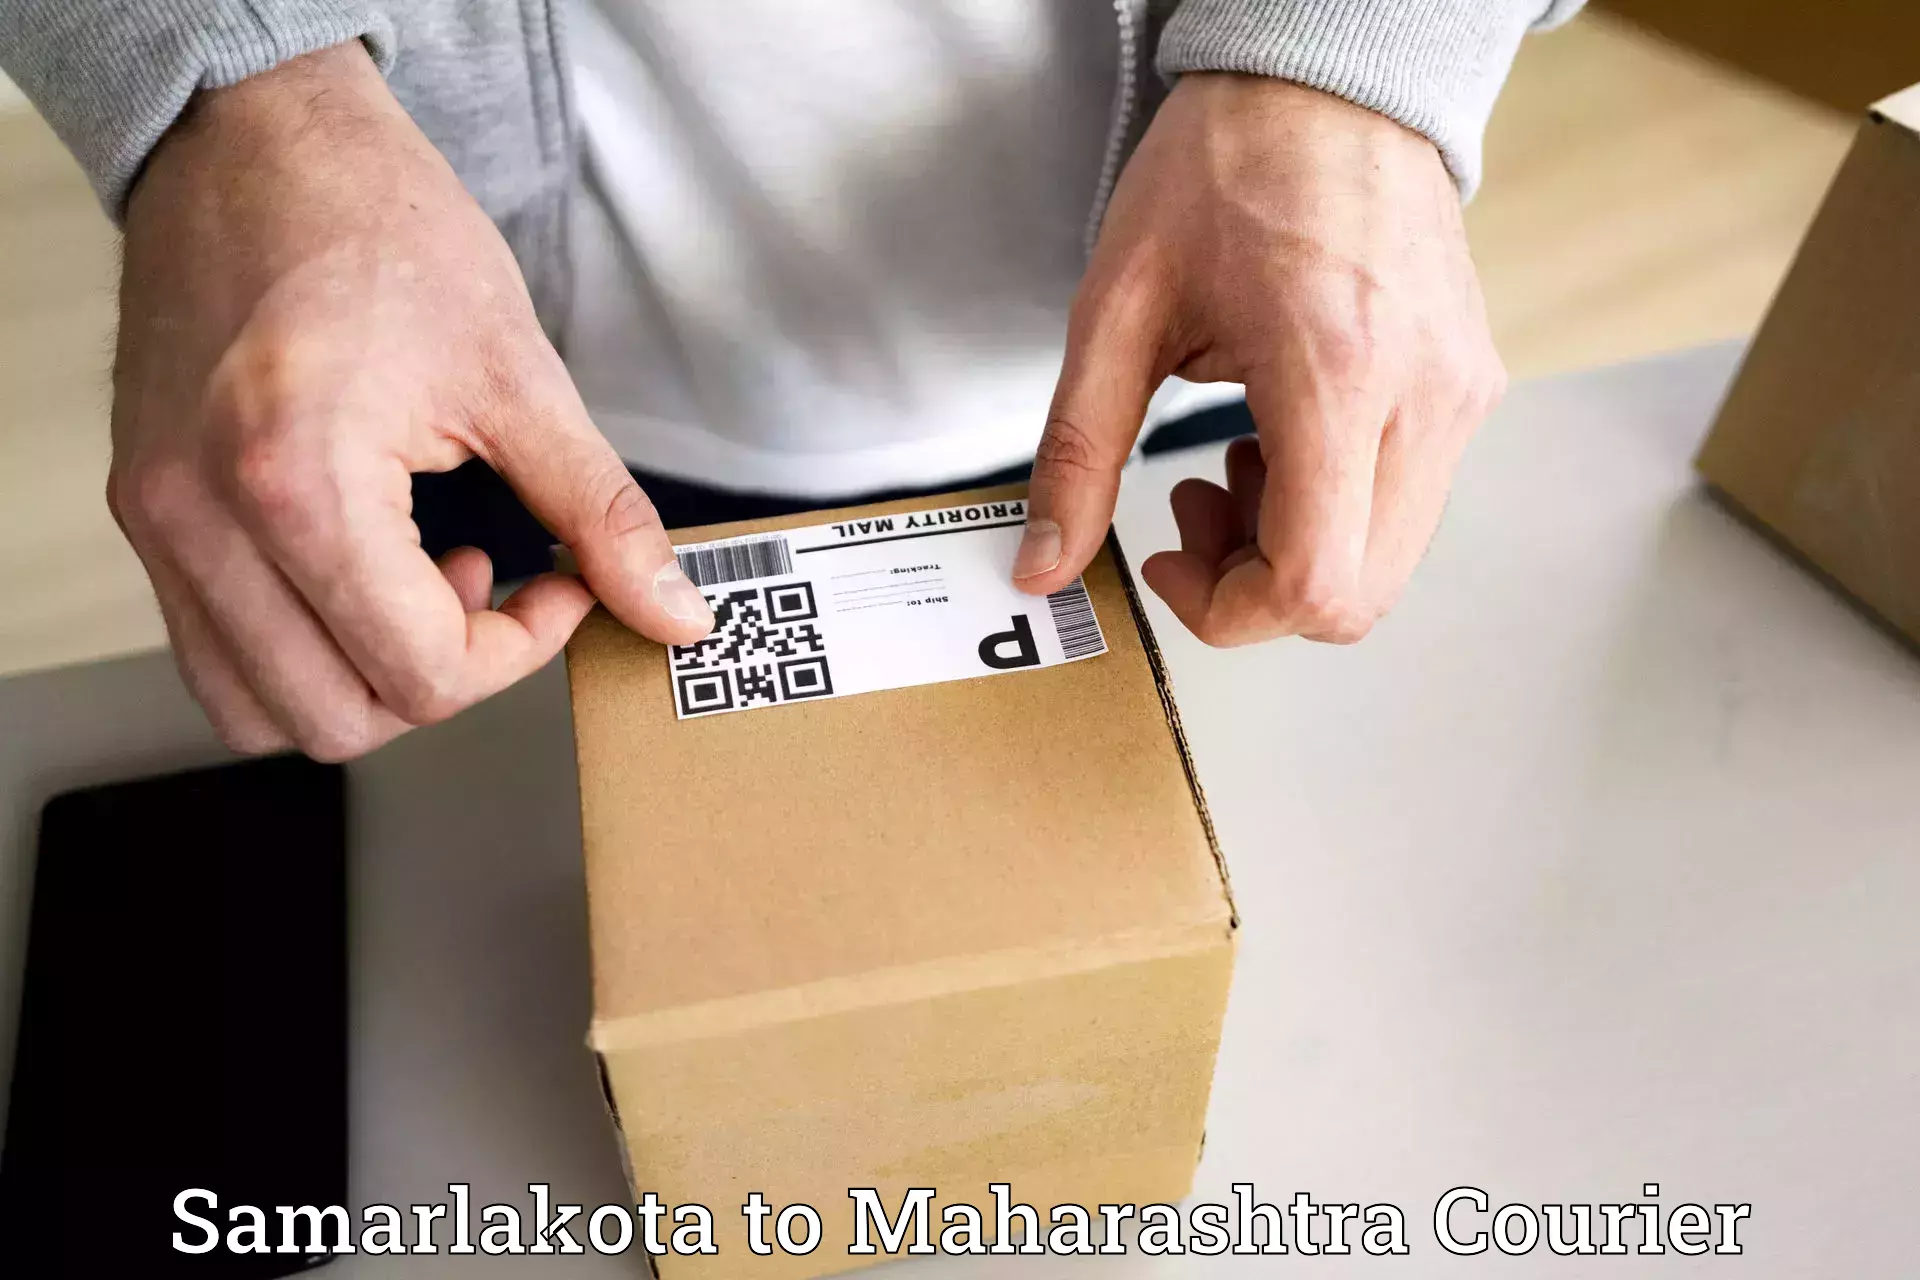 Next day courier Samarlakota to Maharashtra